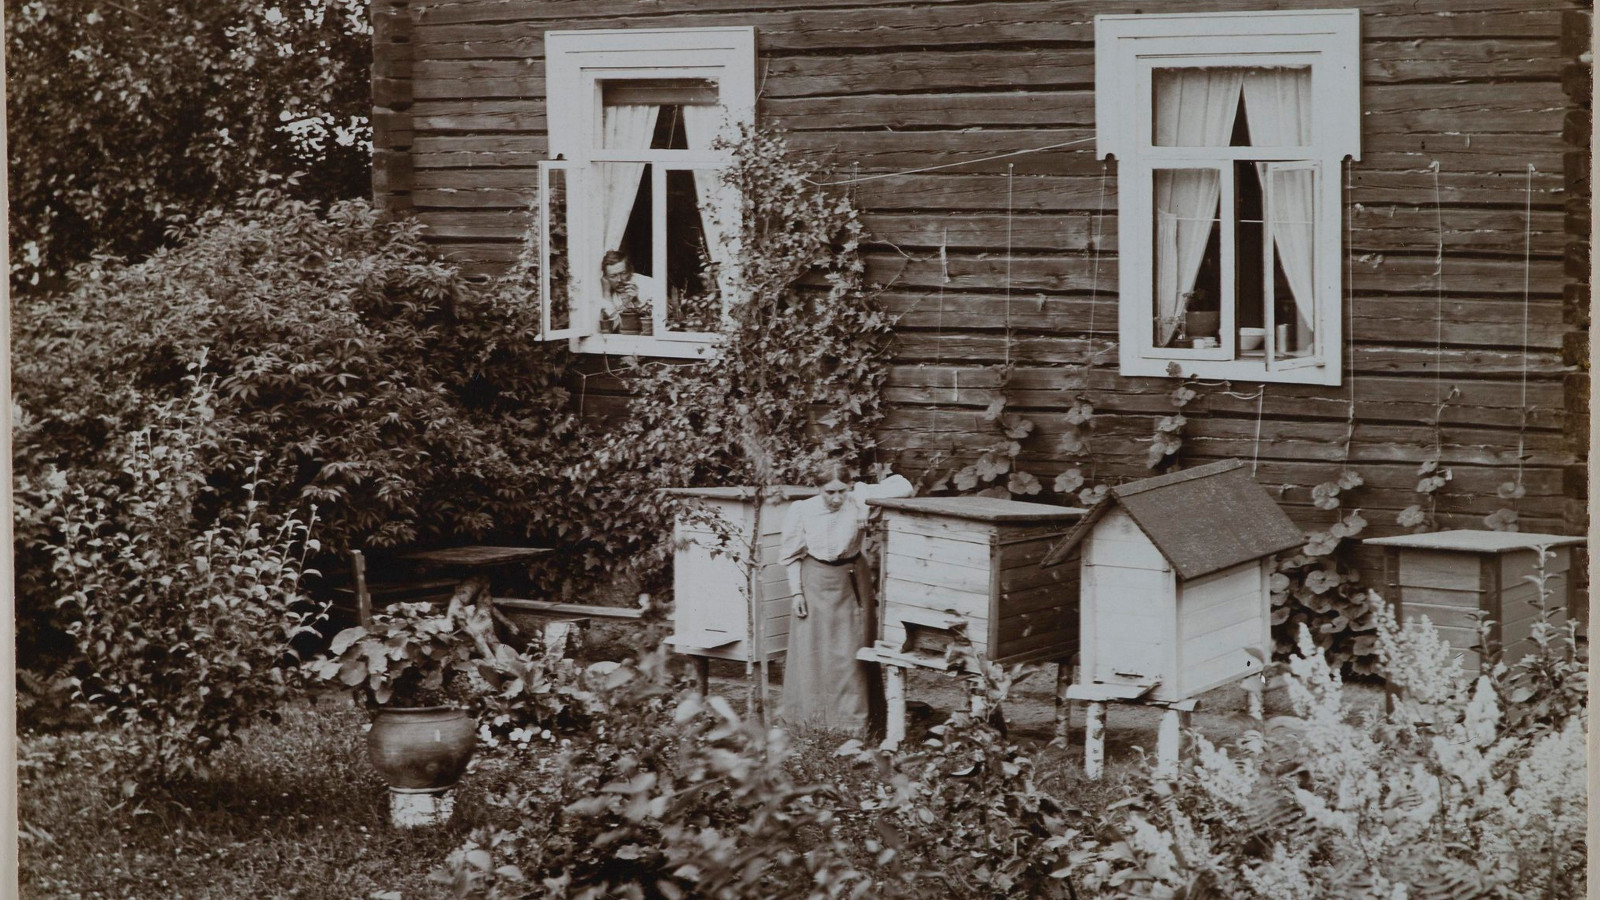 Kuvassa on Gallen-Kallelan hirsitalo ja sen vierellä mehiläispesiä sekä nainen hoitamassa niitä. Kuva on musta-valkoinen.